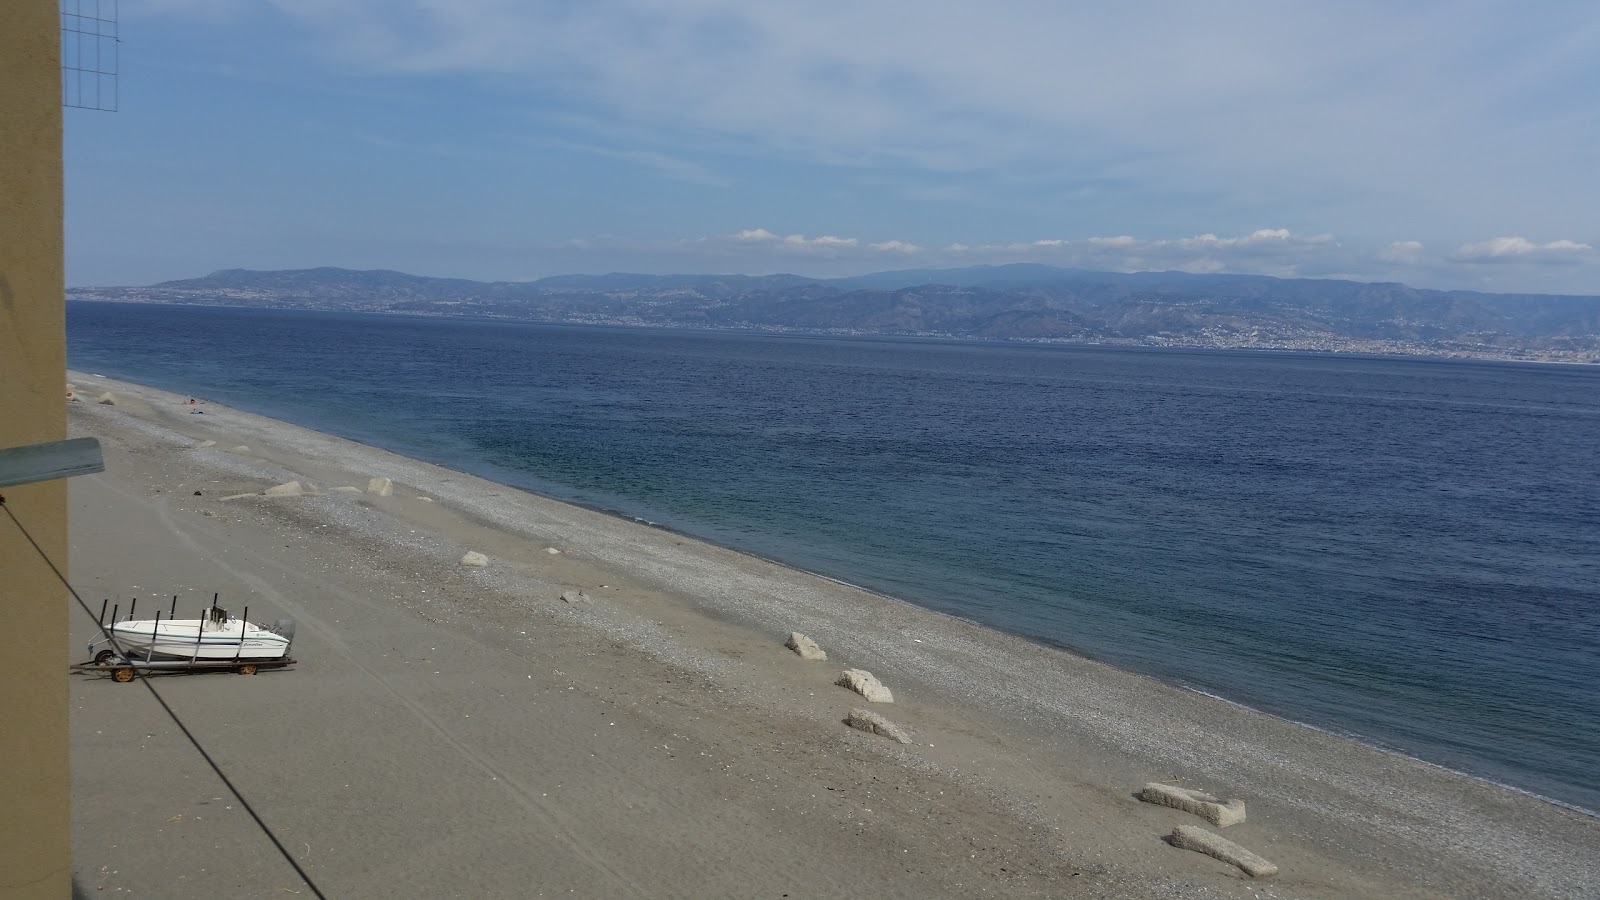 Zdjęcie Mili Marina beach II z powierzchnią szary kamyk